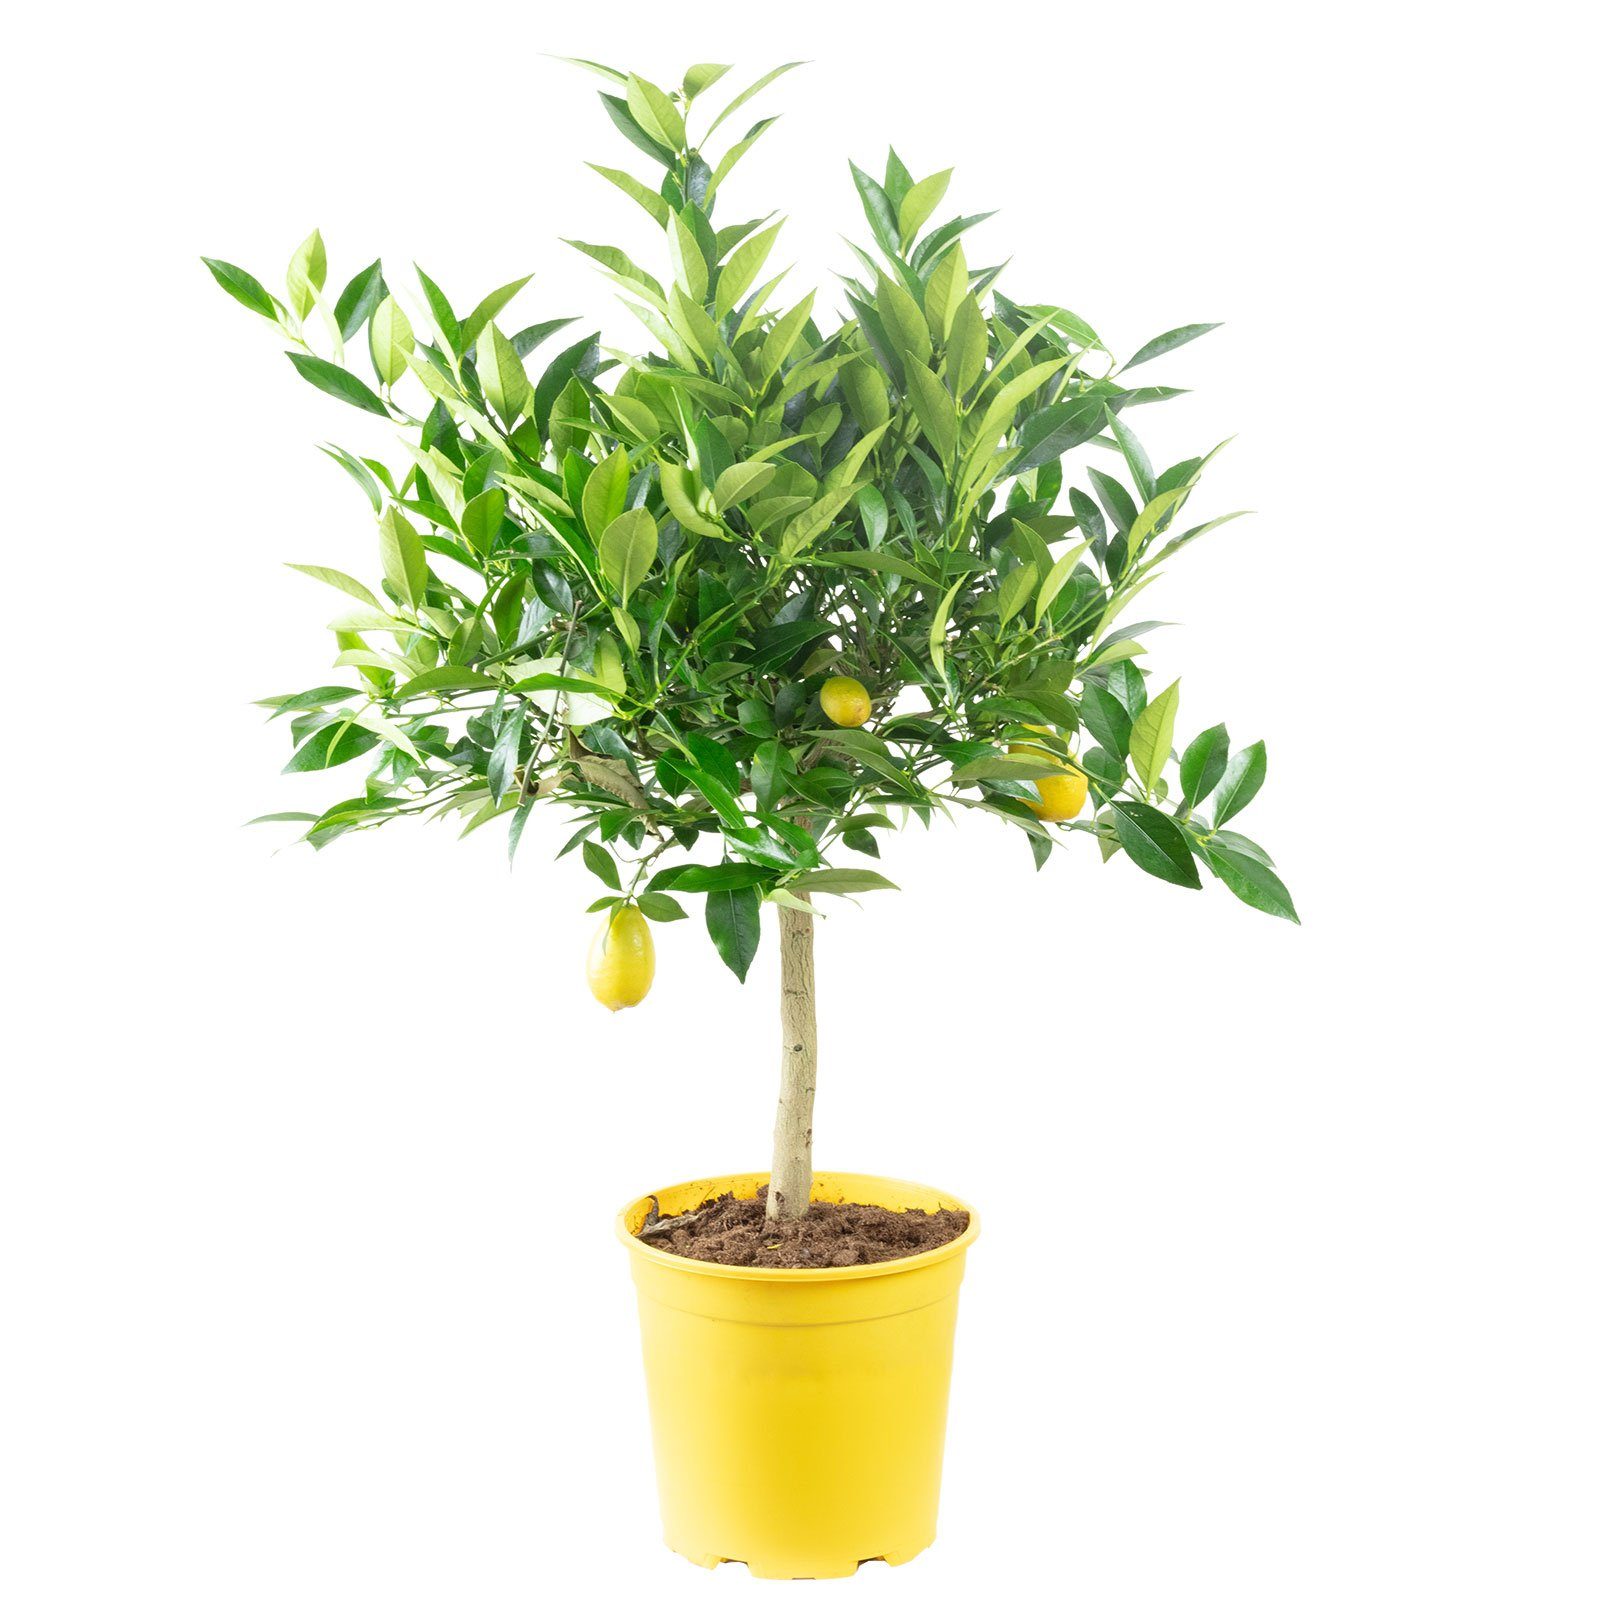 Flowerbox Blumentopf »bepflanzt mit Obstpflanze Zitronenbaum - Citrus Limon  - Höhe ca. 40 cm, Topf-Ø 19 cm« online kaufen | OTTO